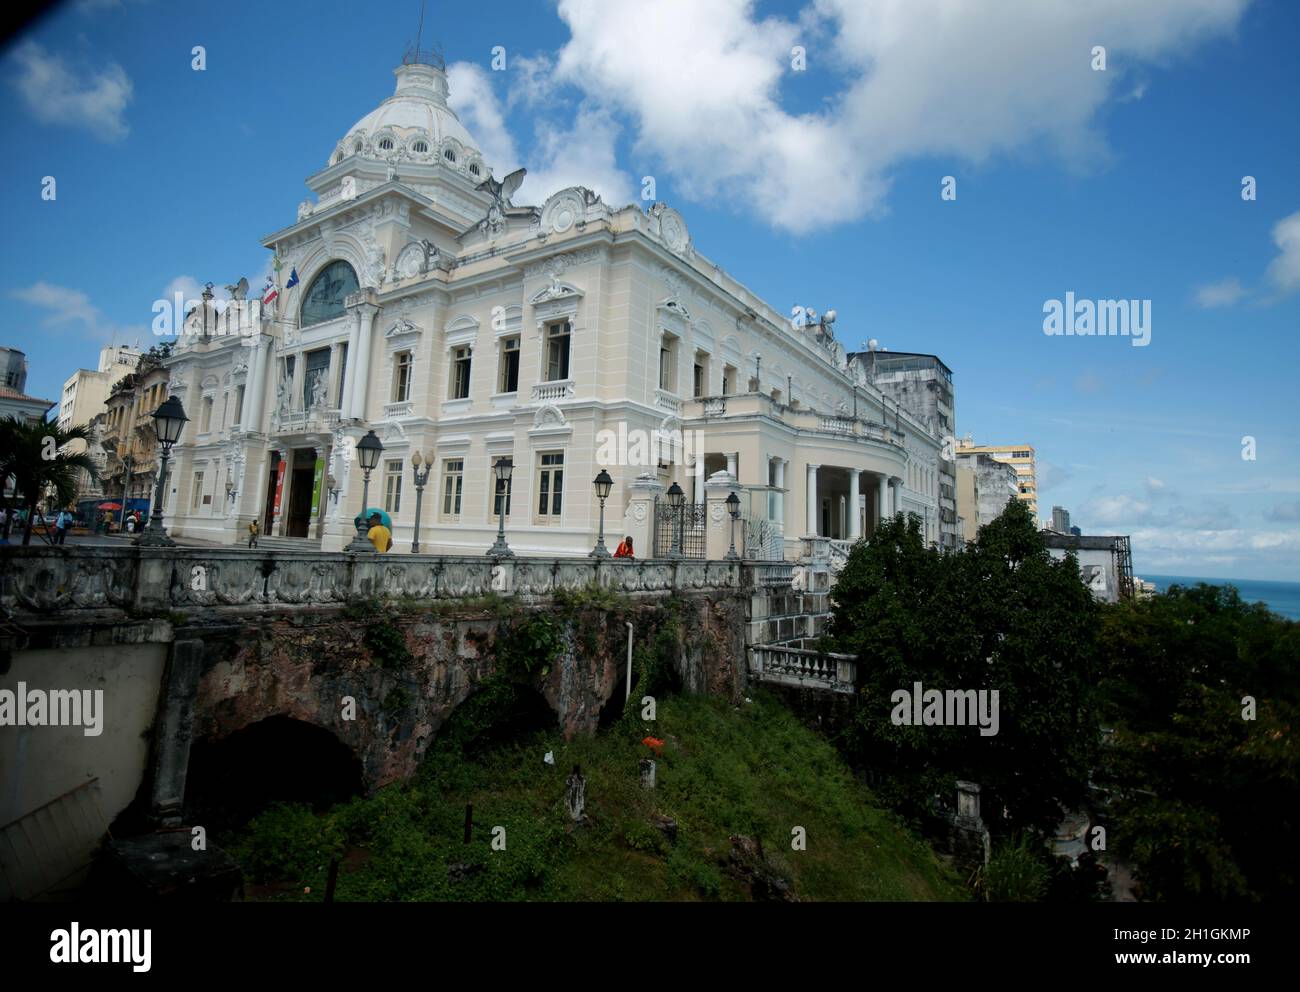 salvador, bahia / brasilien - 23. Mai 2015: Blick auf den Rio Branco Palast im historischen Zentrum der Stadt Salvador. *** Ortsüberschrift *** Stockfoto